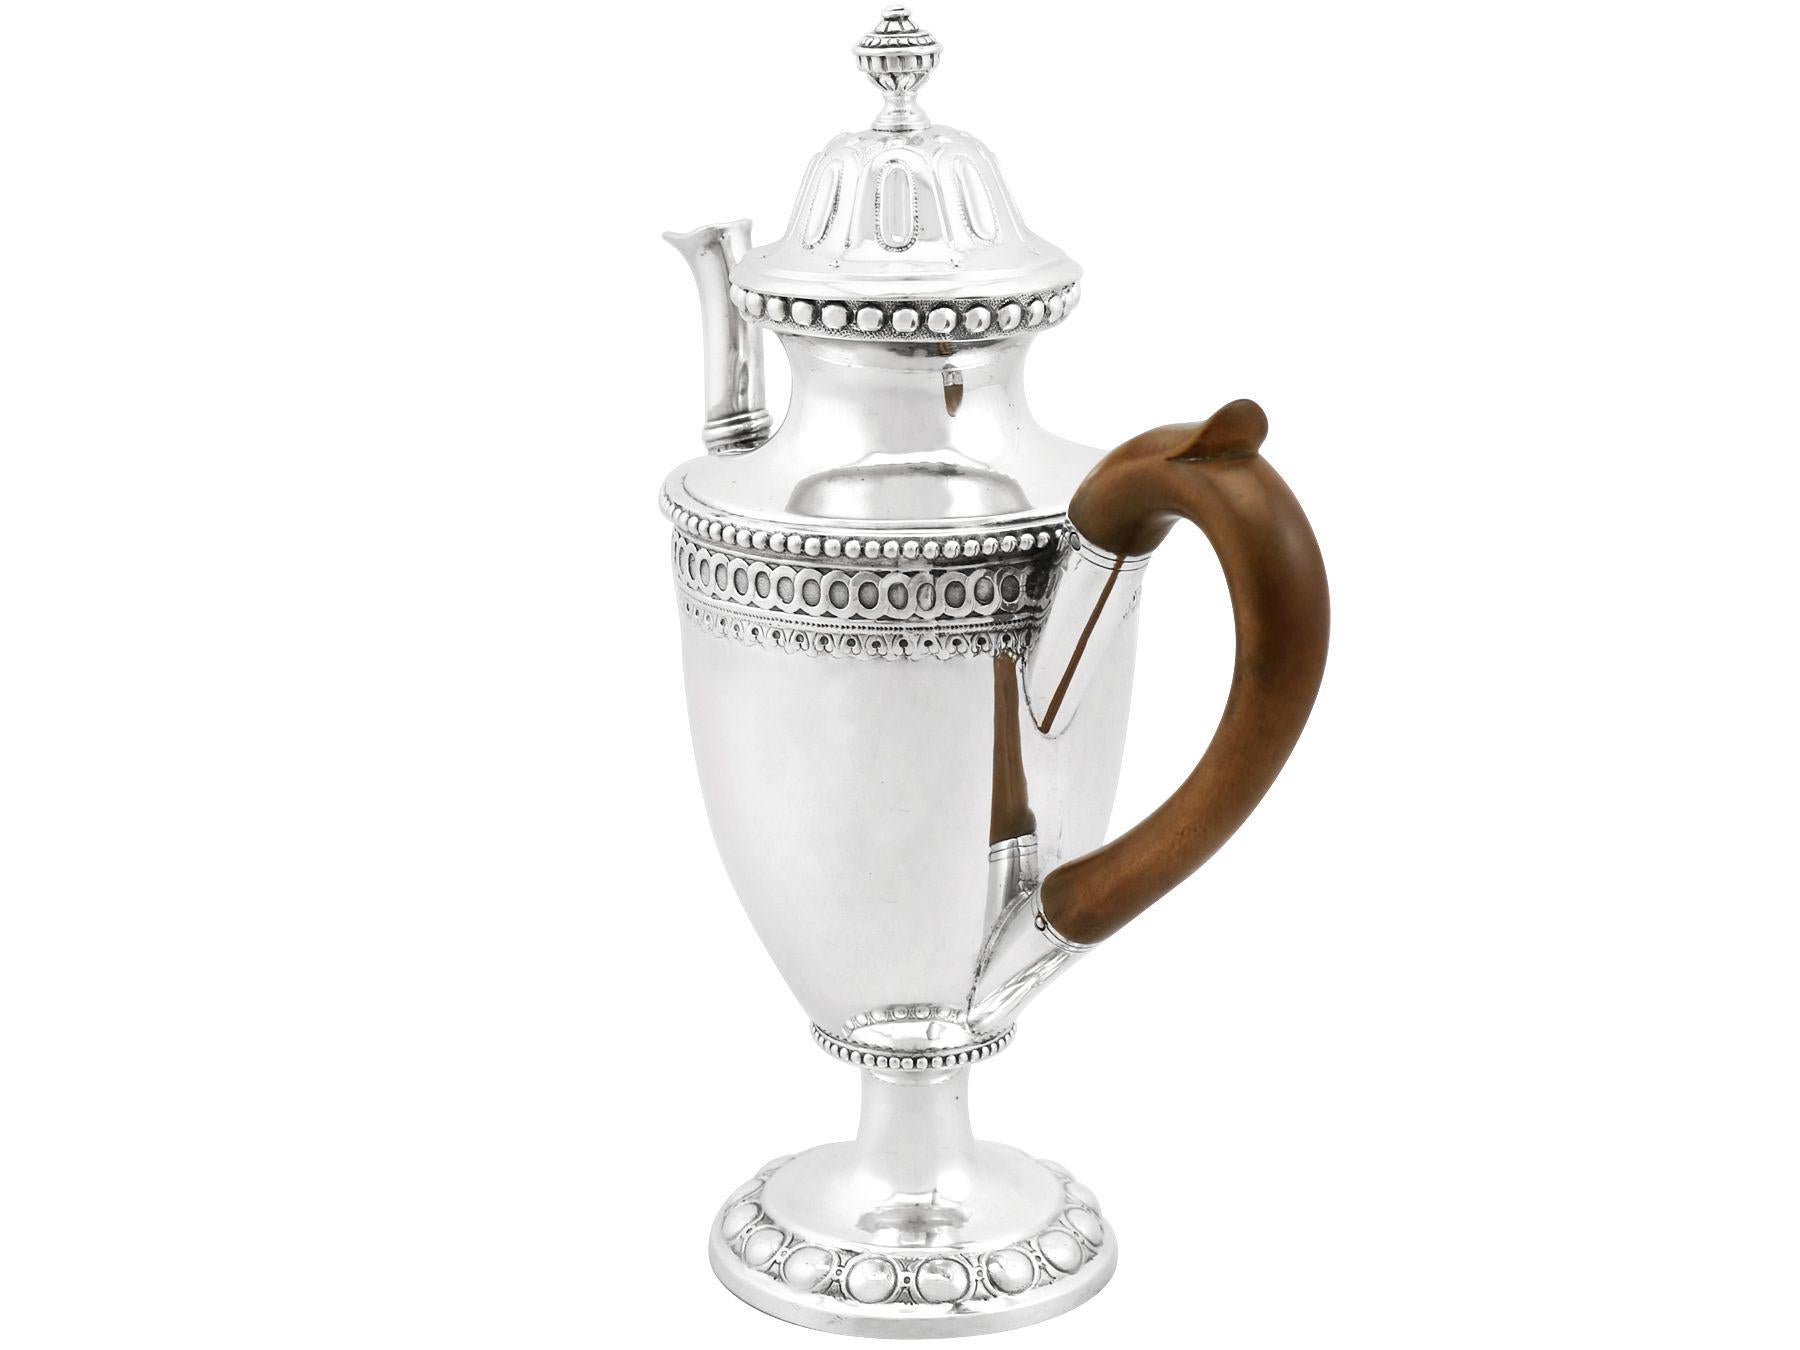 Eine außergewöhnliche, feine und beeindruckende antike Kaffeekanne aus deutschem Silber; eine Ergänzung zu unserer Sammlung von Silbergeschirr aus dem 18.

Diese außergewöhnliche antike Kaffeekanne aus Neusilber hat eine runde Form auf einem